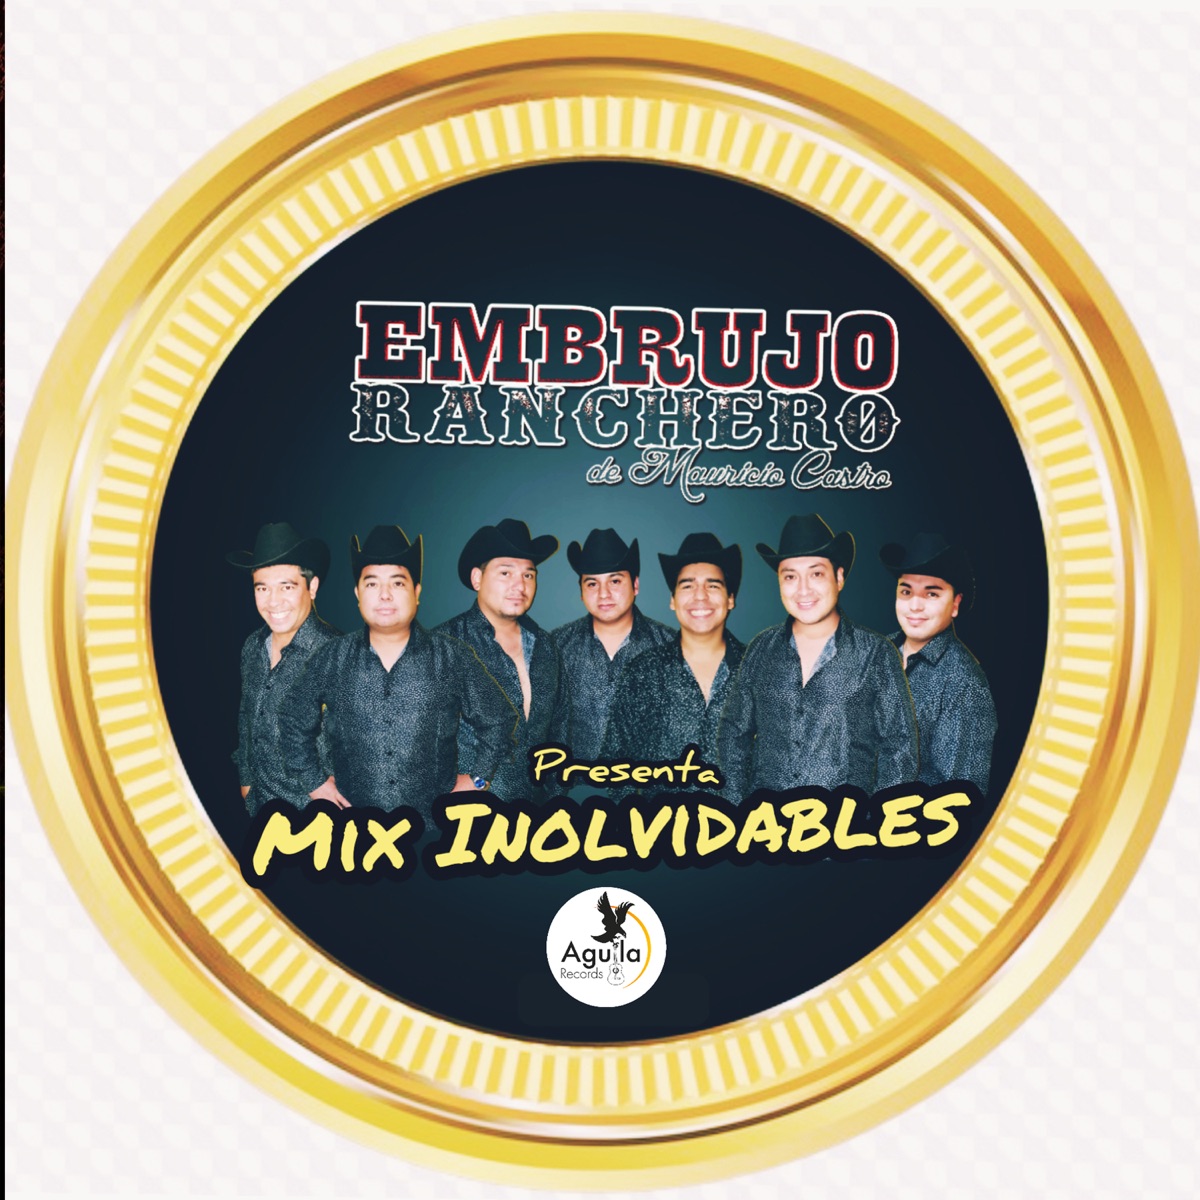 EL Mambo Continua - Album by EMBRUJO RANCHERO - Apple Music